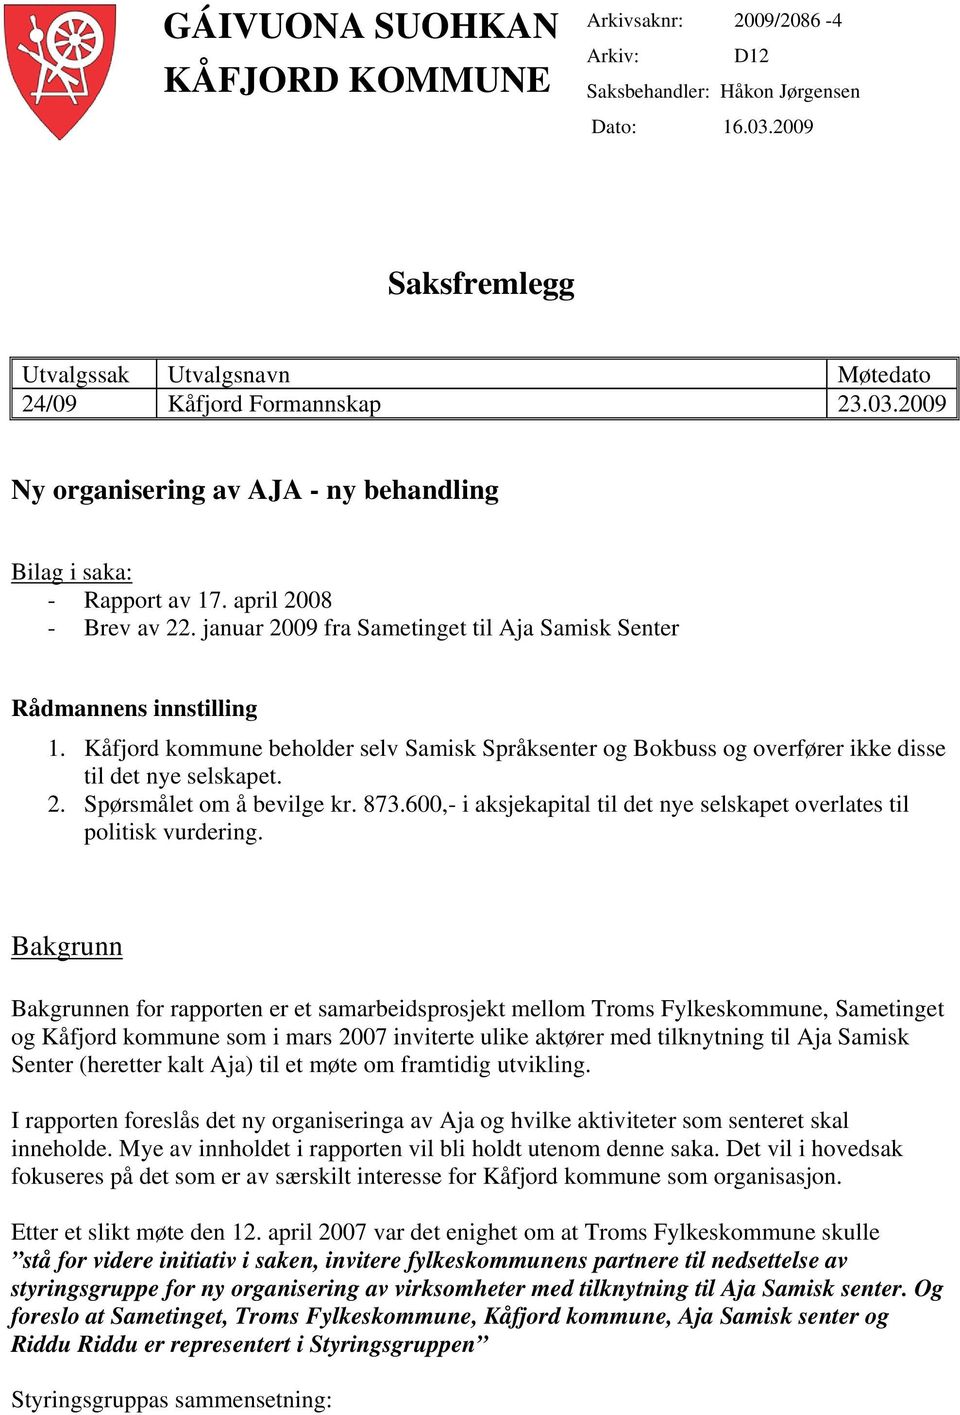 Kåfjord kommune beholder selv Samisk Språksenter og Bokbuss og overfører ikke disse til det nye selskapet. 2. Spørsmålet om å bevilge kr. 873.